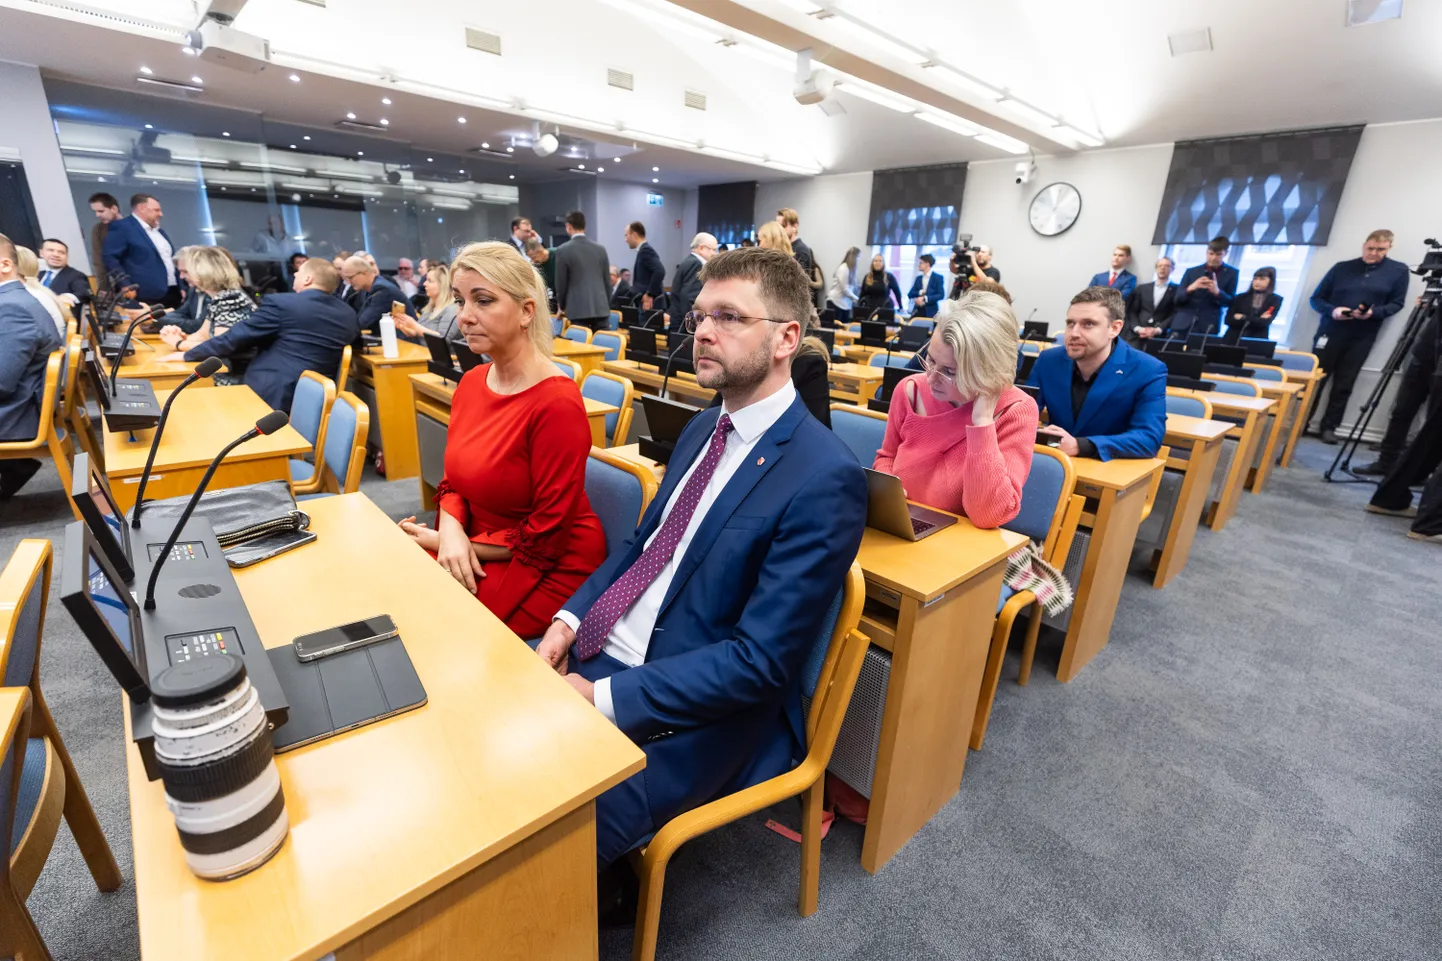 Tallinna linnavolikogu erokorraline istung, kus avaldati umbusaldust linnapeale. Esiplaanil võimalik uus linnapea Jevgeni Ossinovski
Foto Tairo Lutter, Postimees